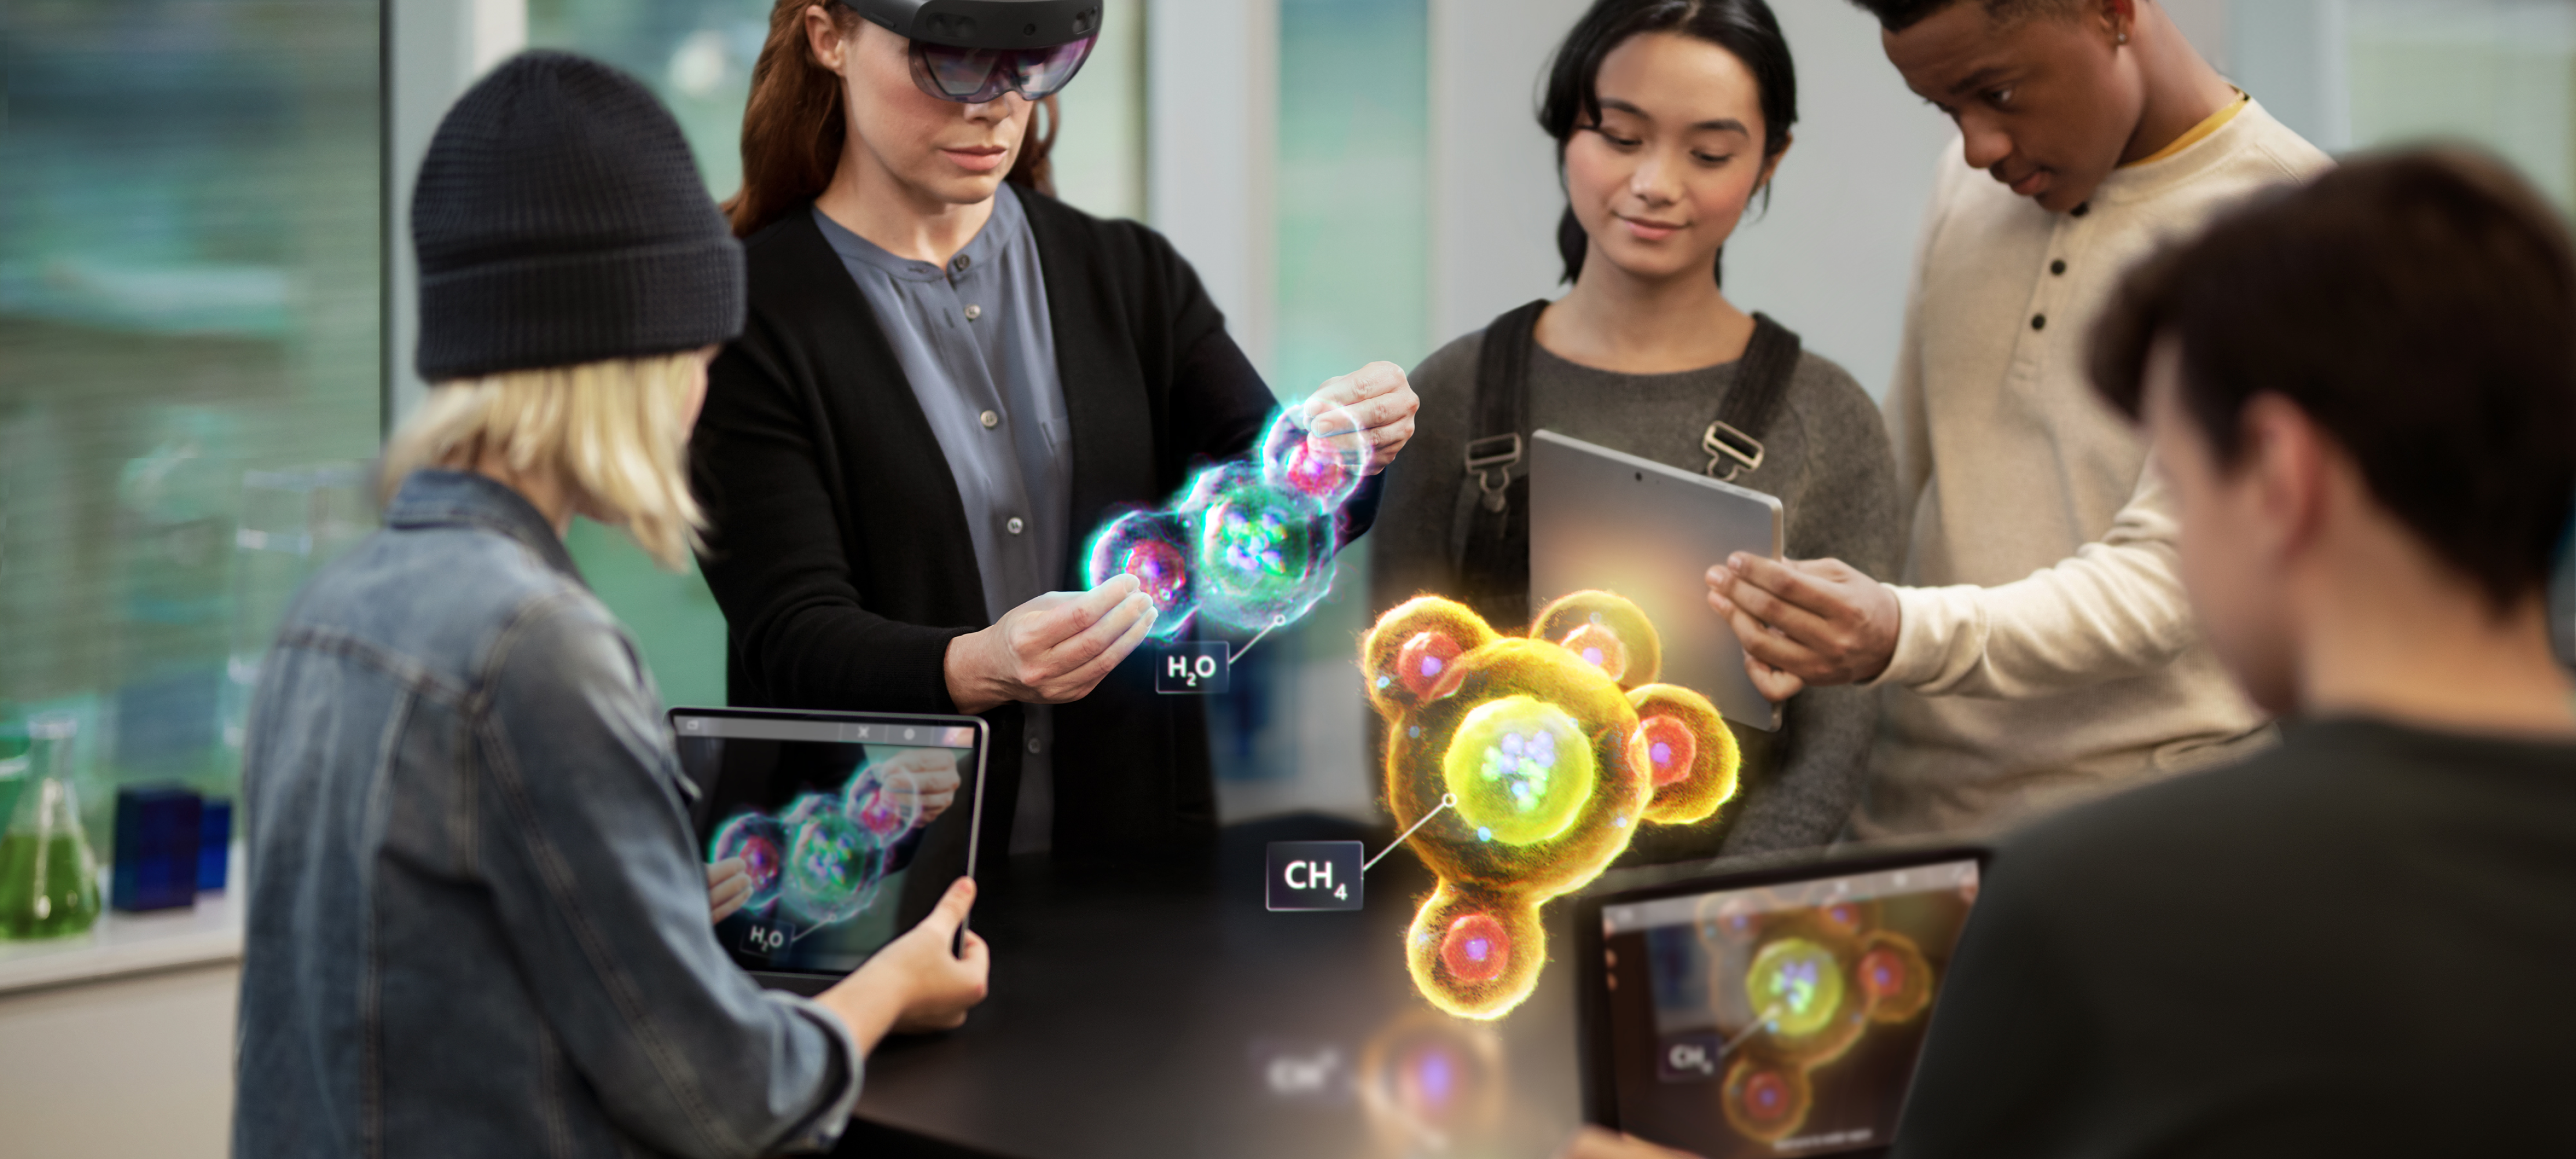 En grupp elever som arbetar med avancerad teknik i virtuell verklighet